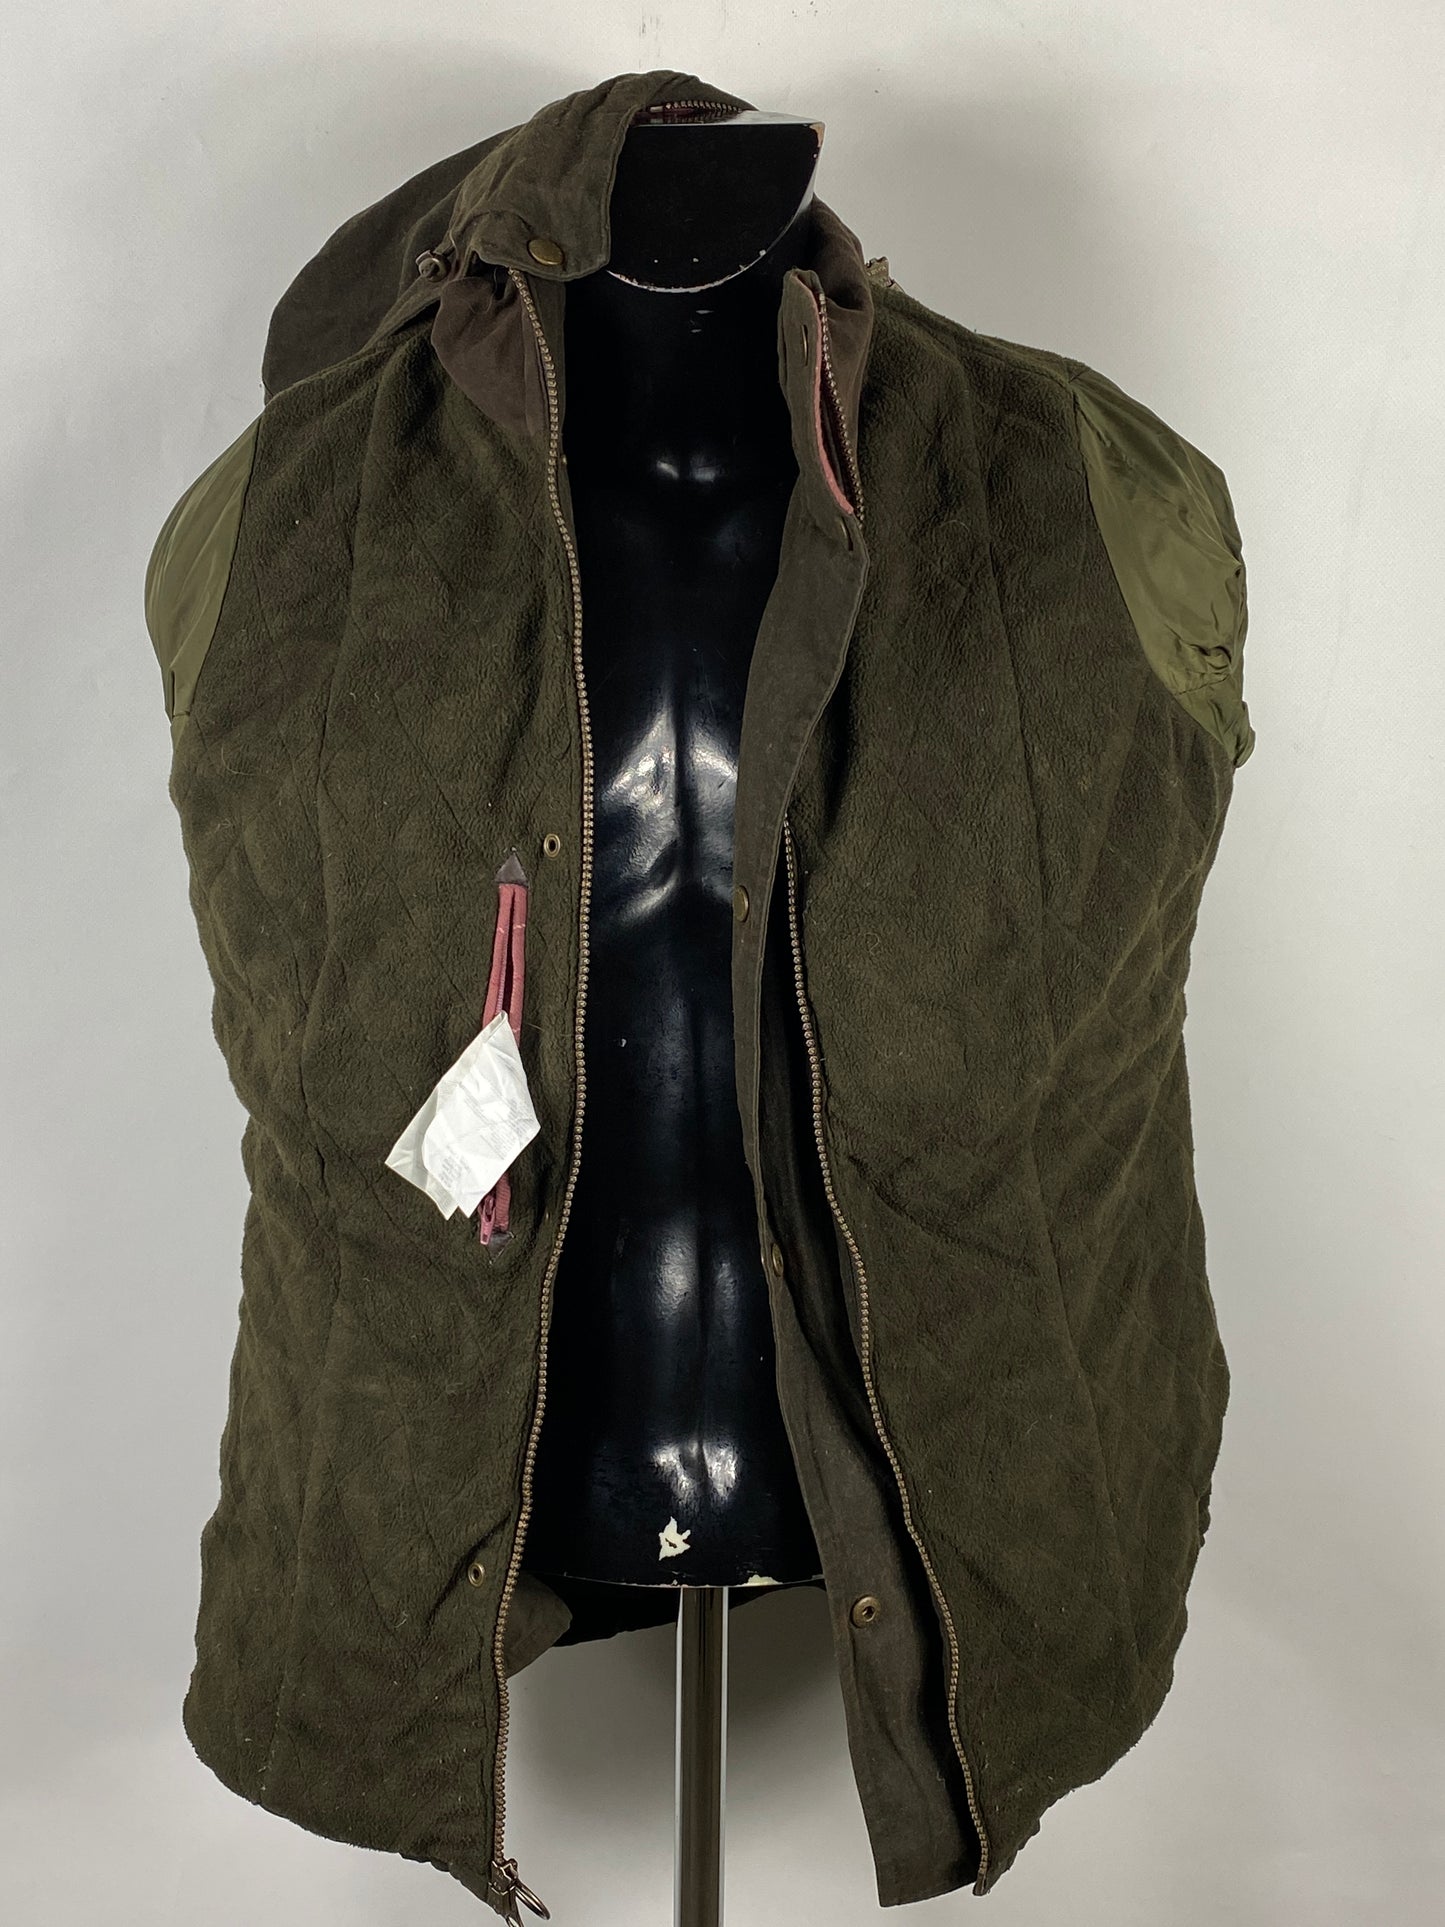 Barbour Giacca da donna oliva Medium Tg.44 Equine Lady Olive cotton jacket size uk14